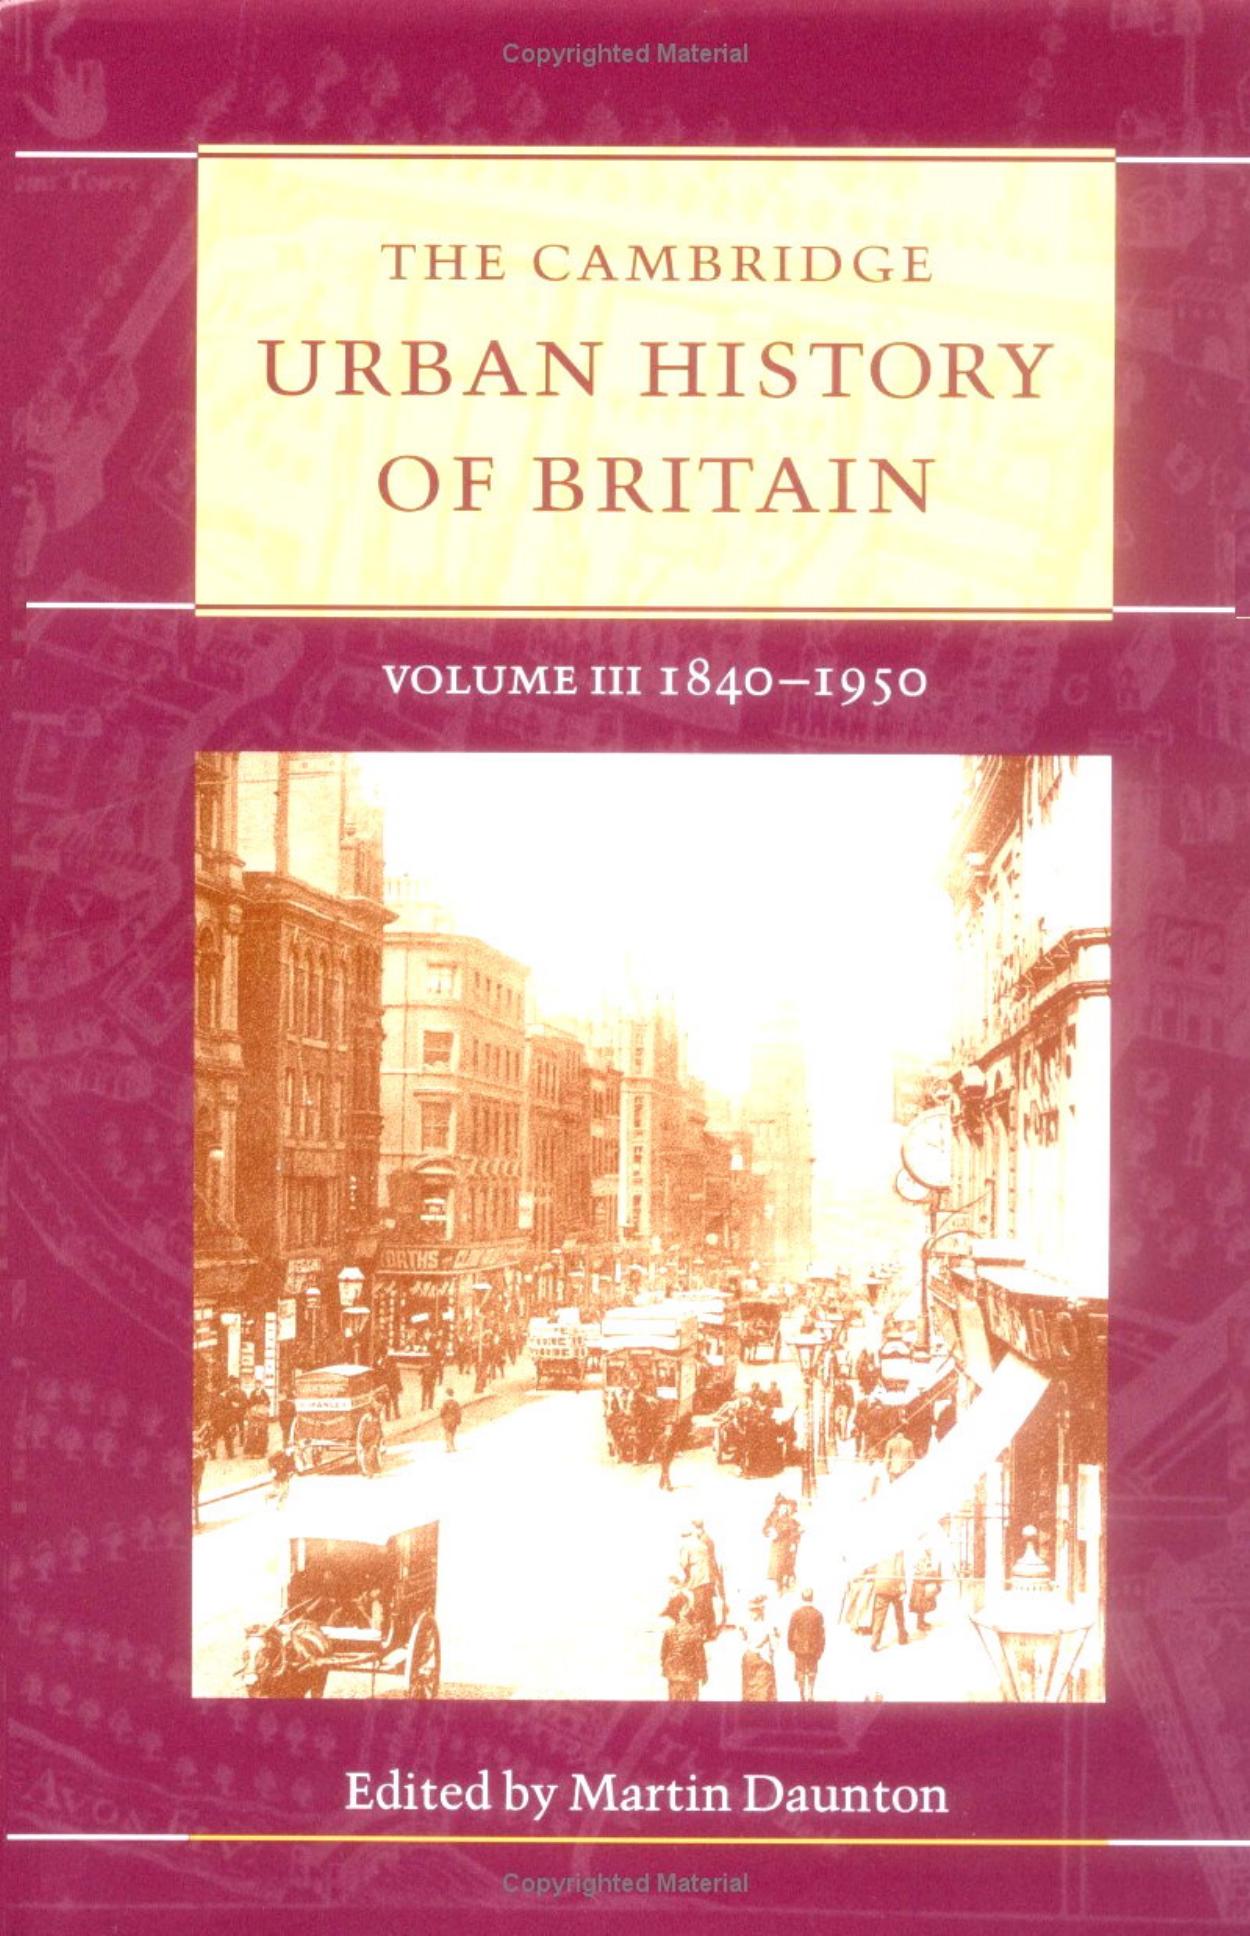 The Cambridge Urban History of Britain Vol 3